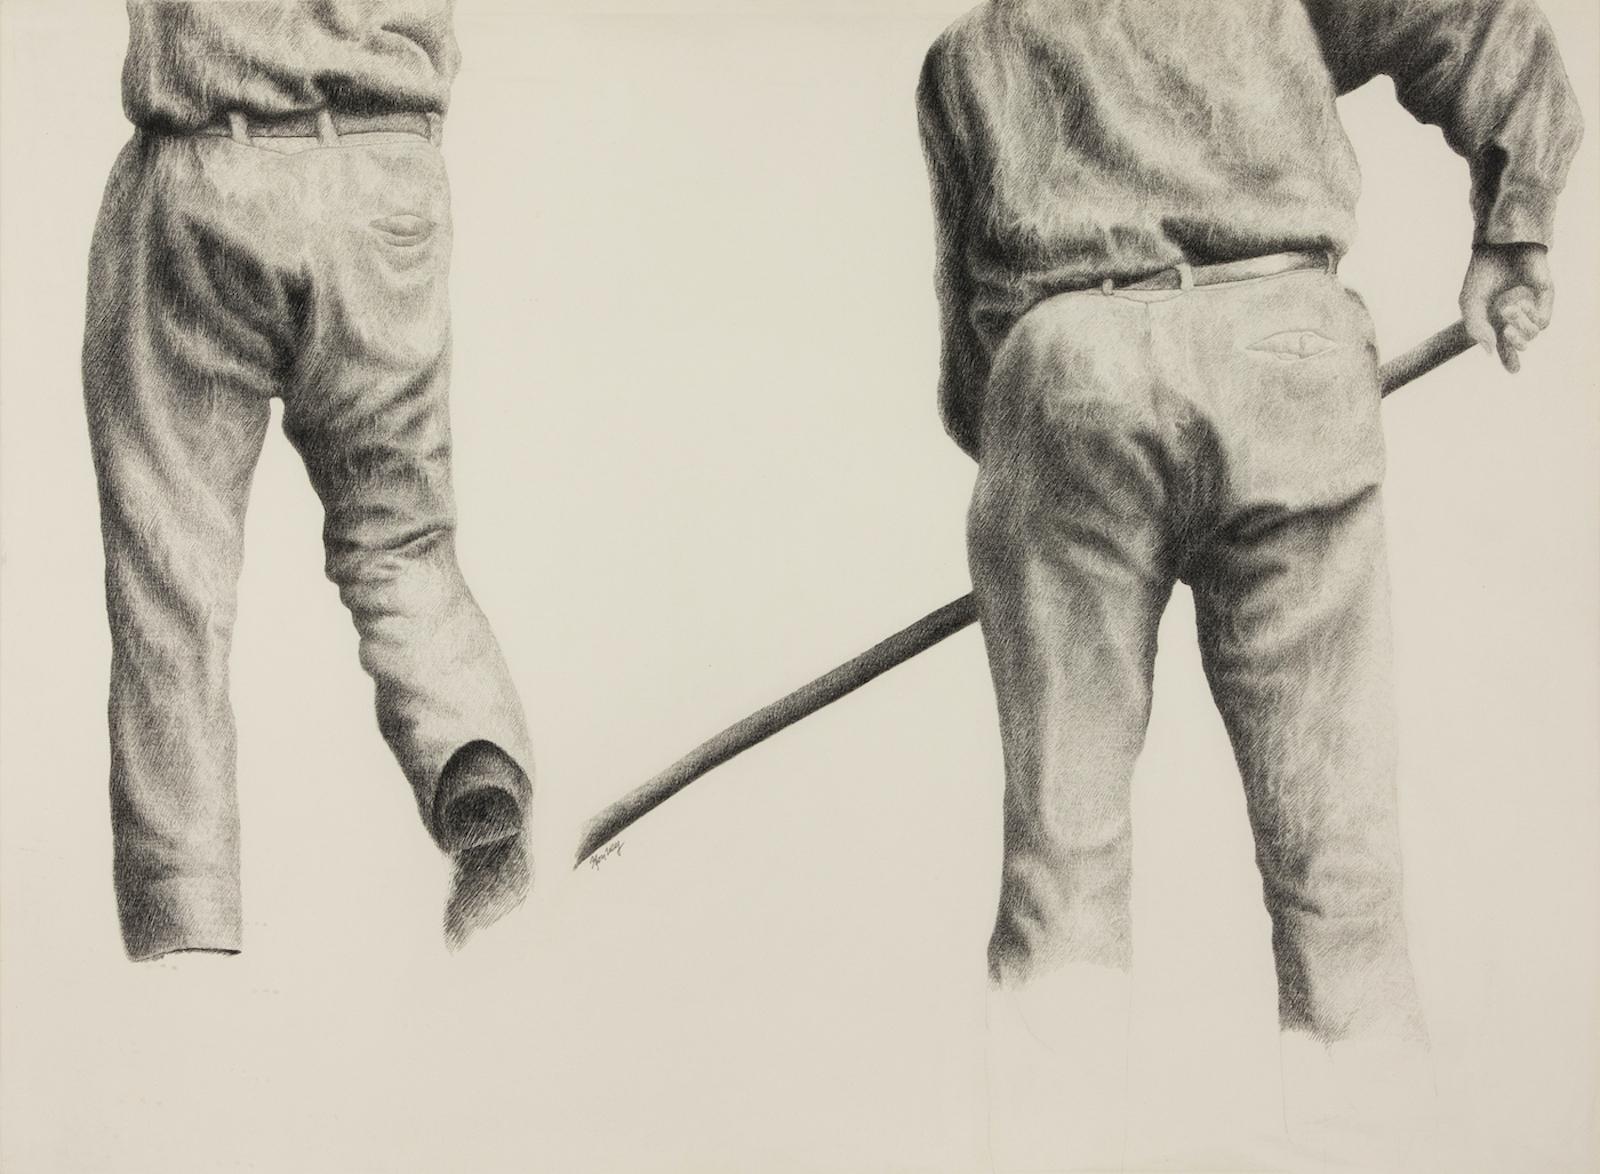 Ouvriers agricoles par Yvon Pissarro (né en 1937)
Crayon sur papier
56 x 76 cm (22 x 30 pouces)
Signé sous l'extrémité gauche du bâton, Yvon Vey
Exécuté en 1982

Provenance
Studio de l'Artistics, Montpellier 

Biographie de l'artiste
Fils de